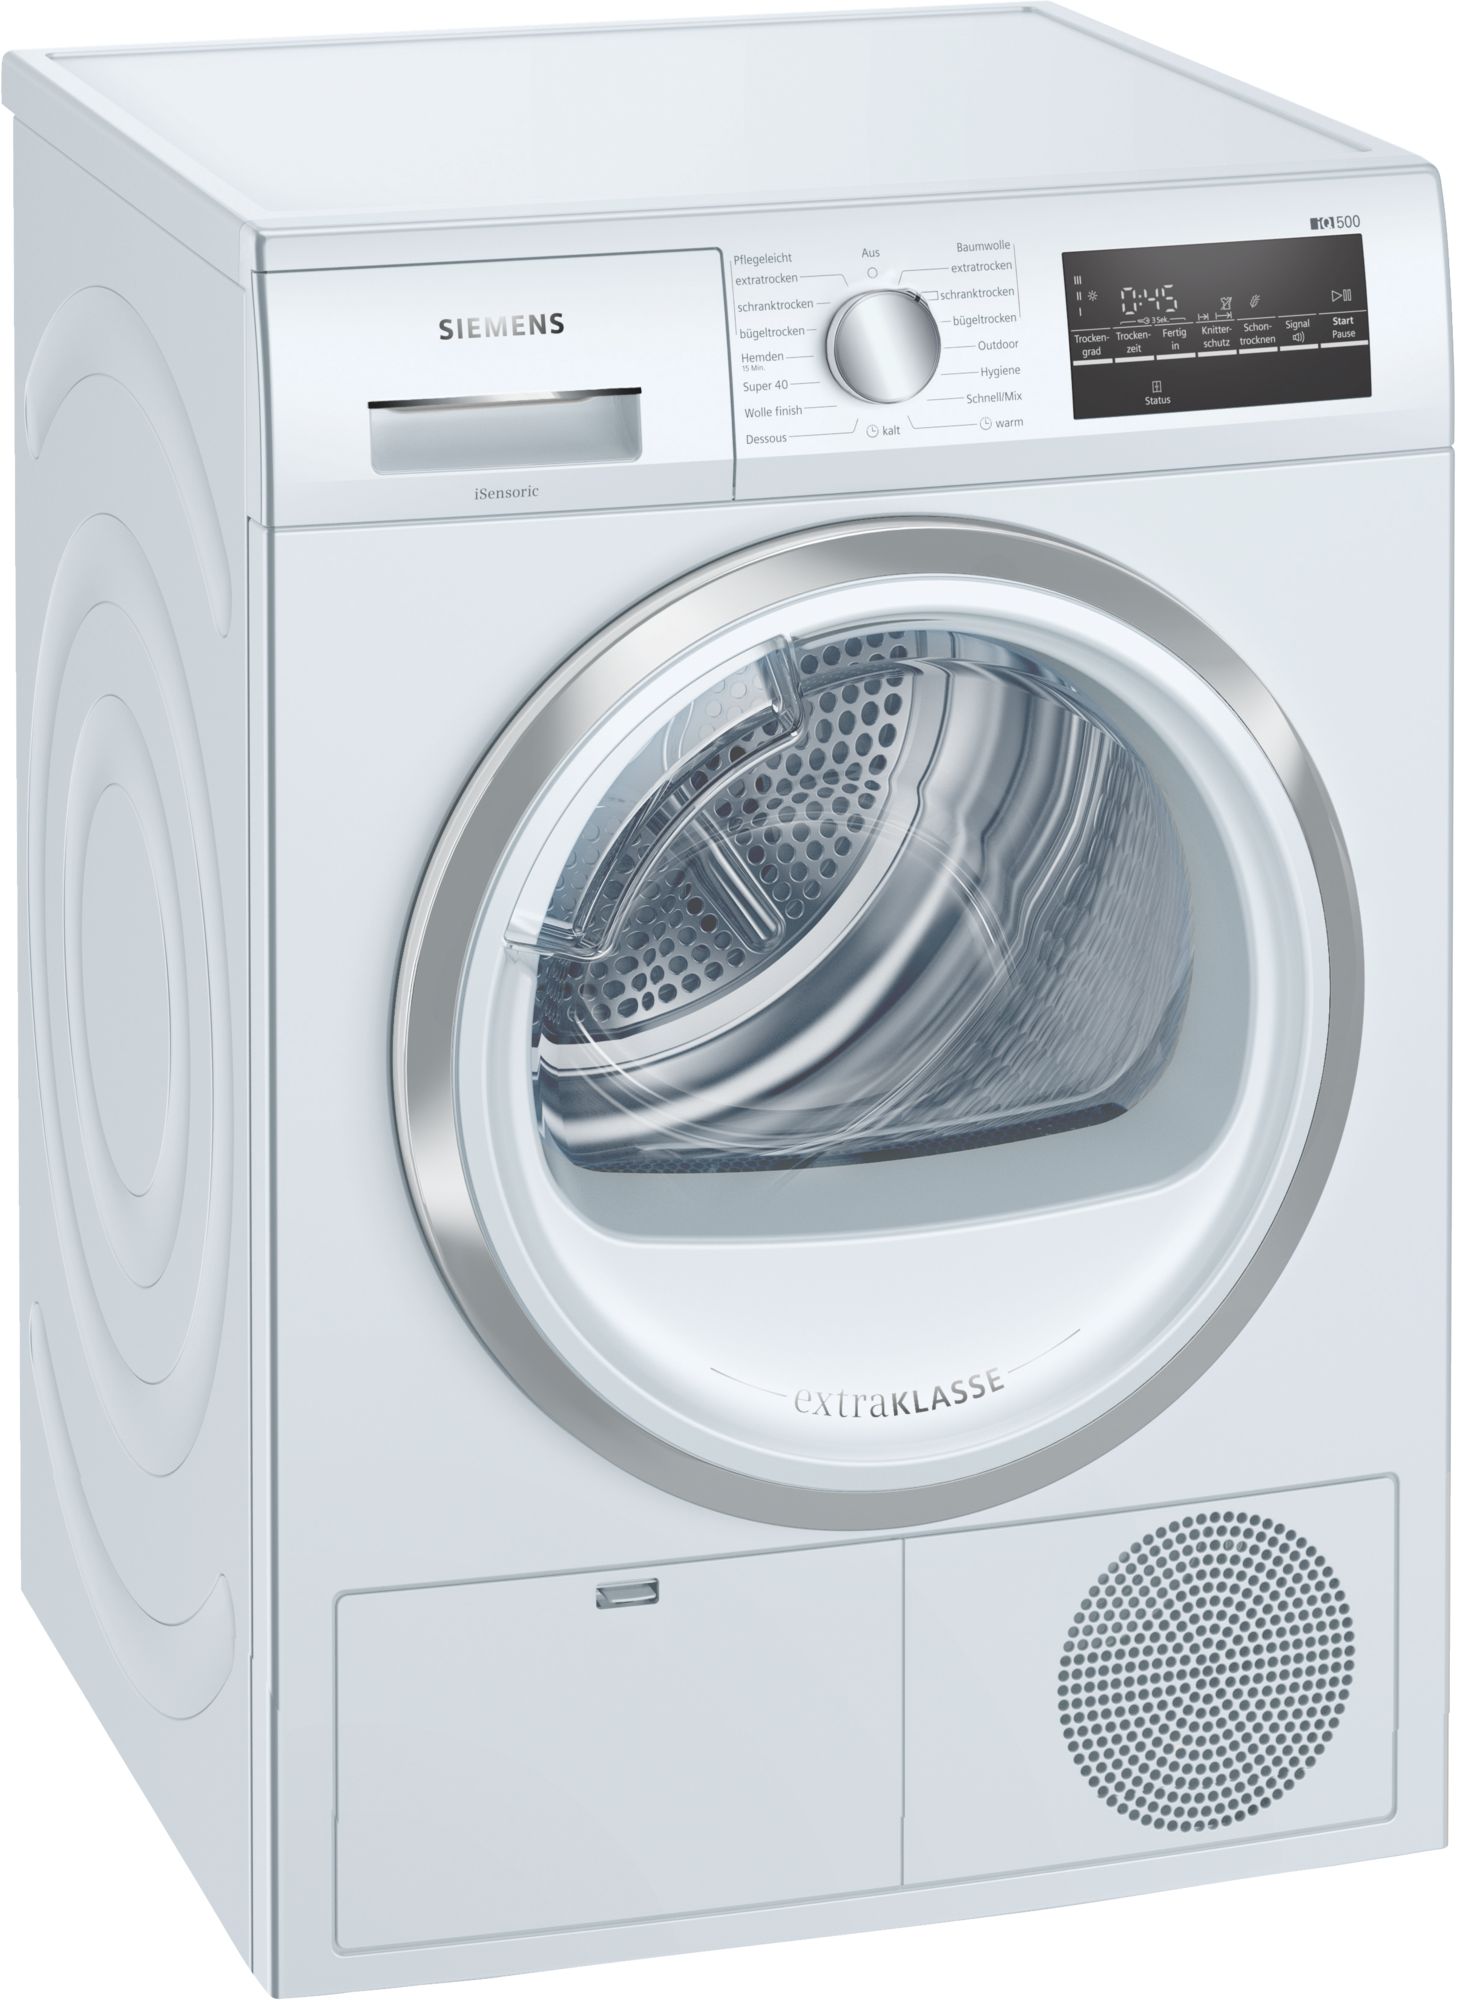 Siemens waschmaschine isensoric - Die besten Siemens waschmaschine isensoric unter die Lupe genommen!